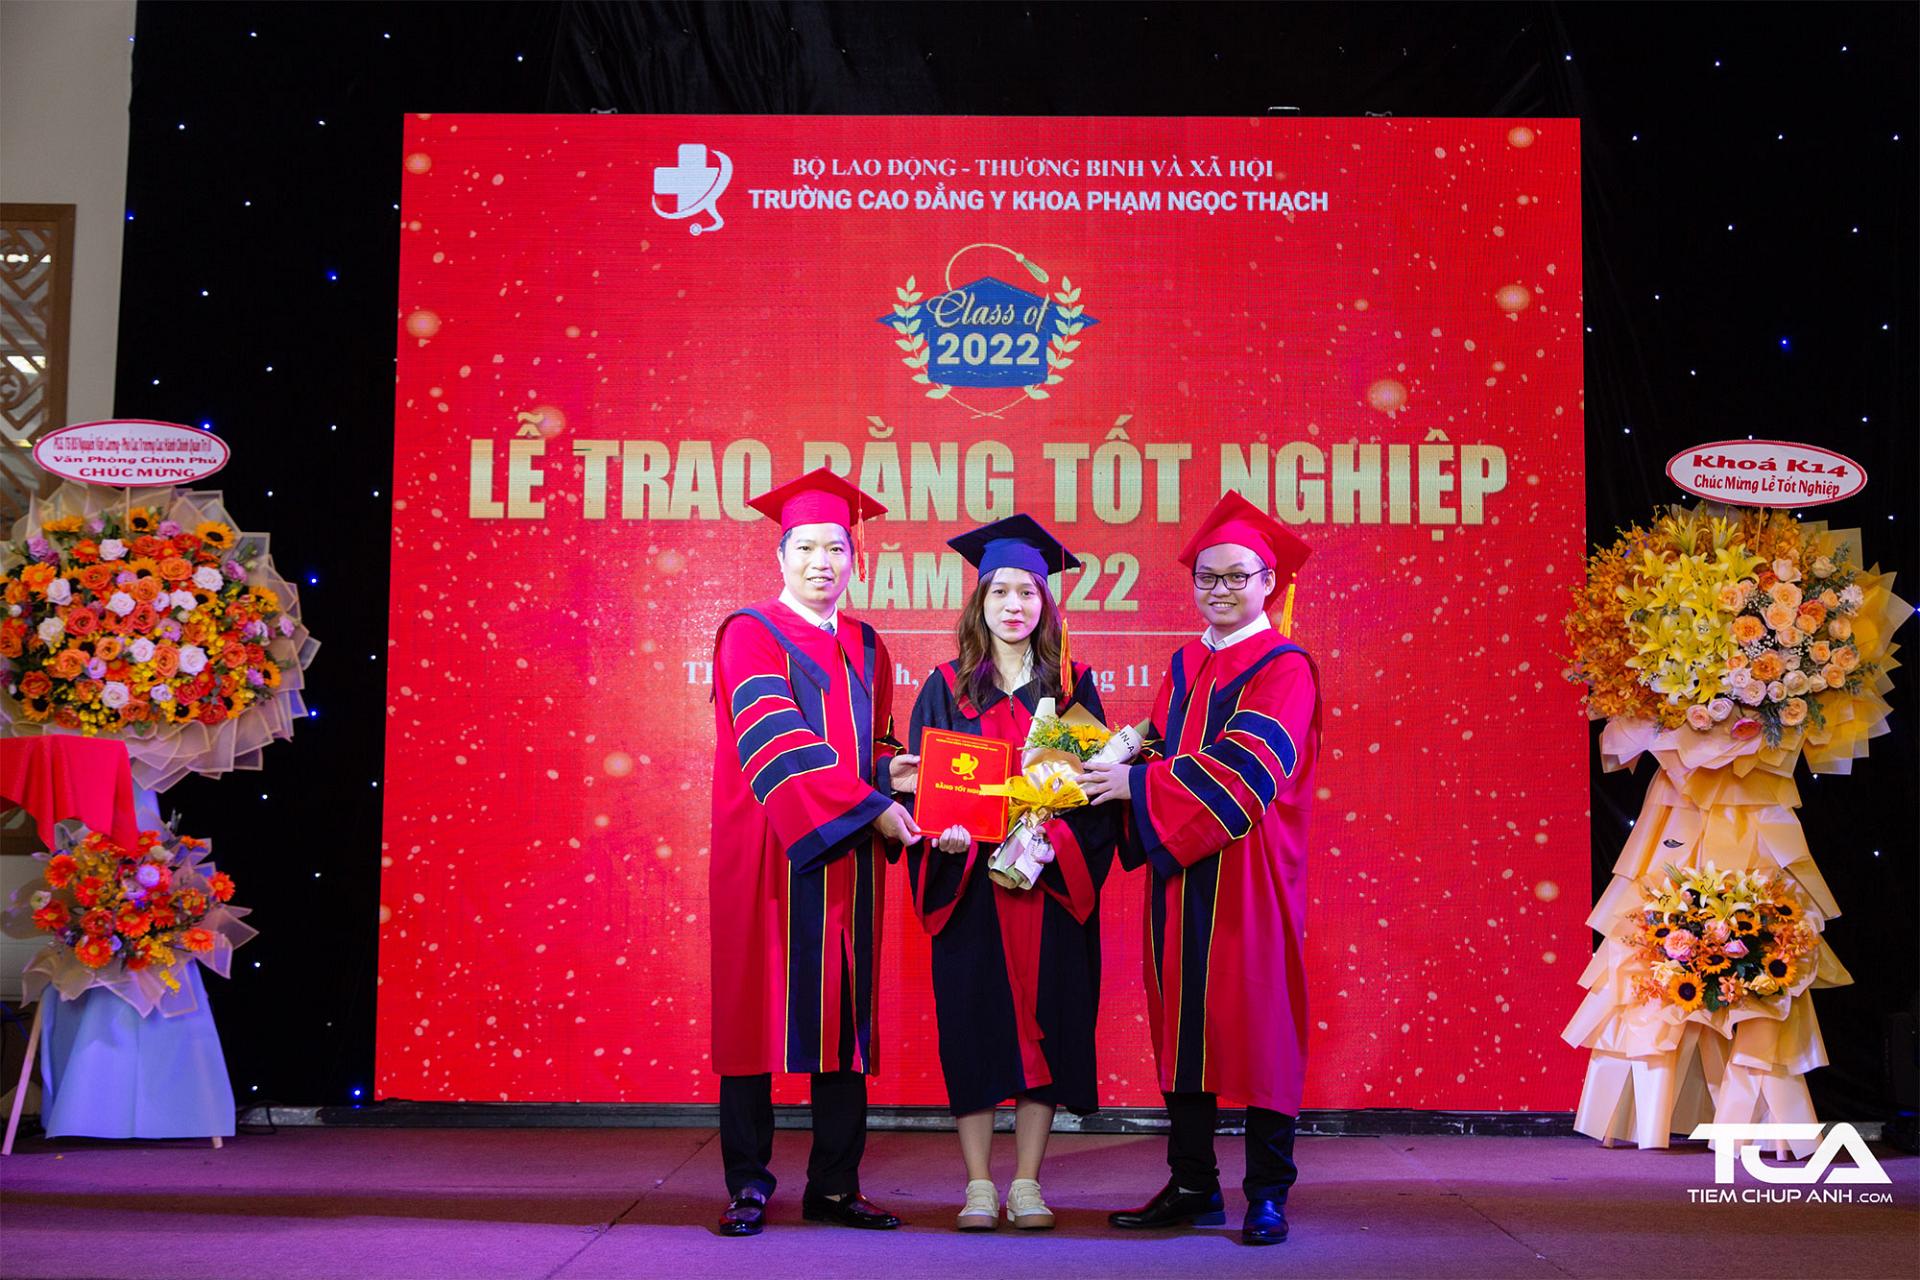 Hiệu trưởng Trường Cao đẳng Y khoa Phạm Ngọc Thạch trao bằng tốt nghiệp cho sinh viên